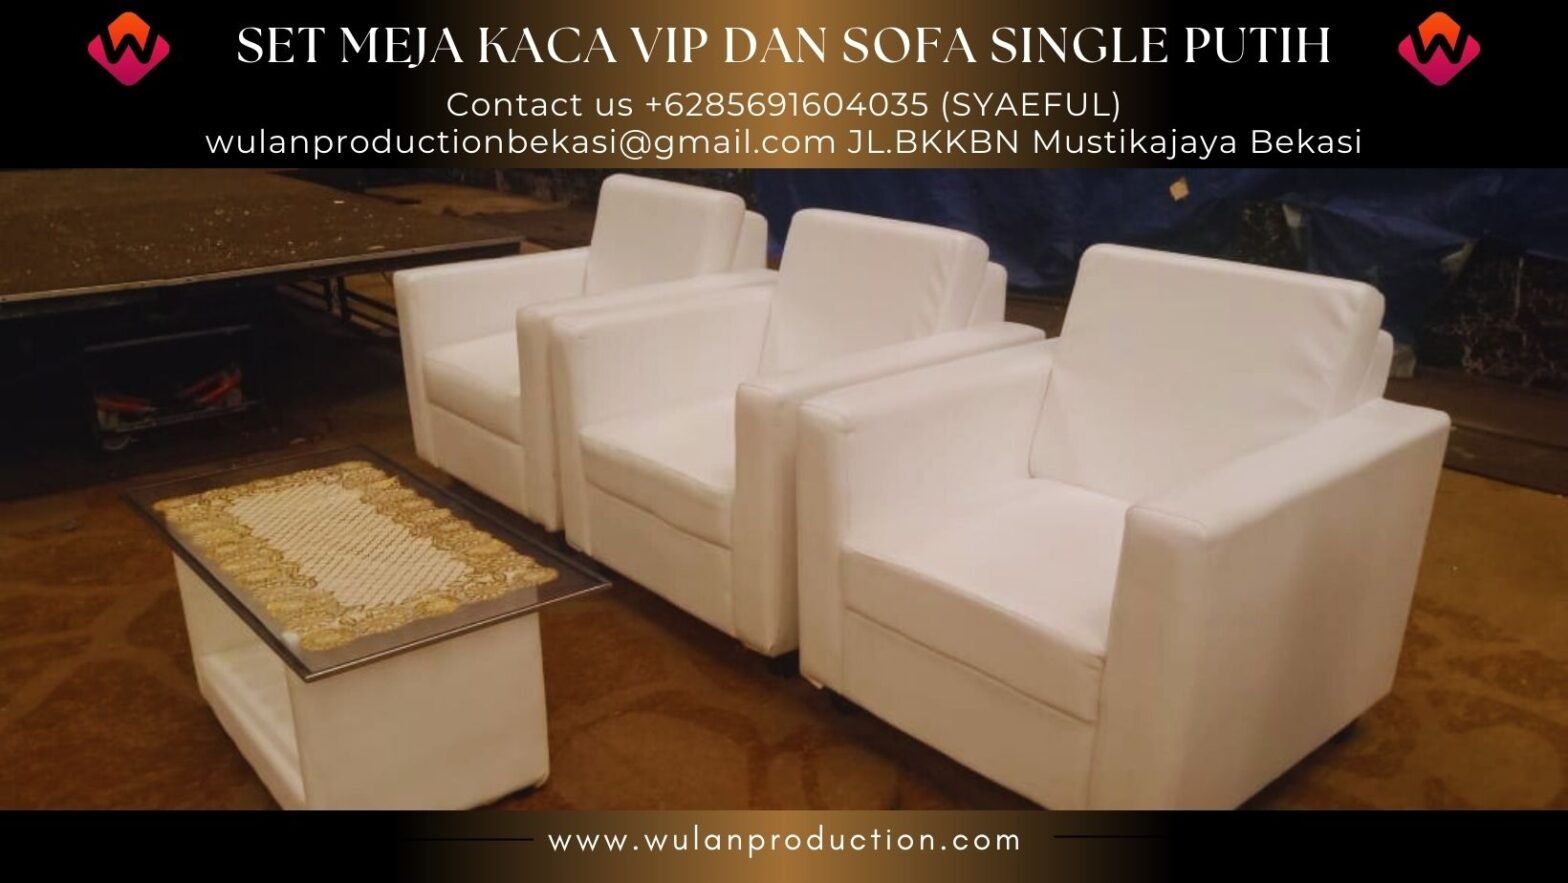 Sewa Meja Vip Kaca set Sofa Single Putih